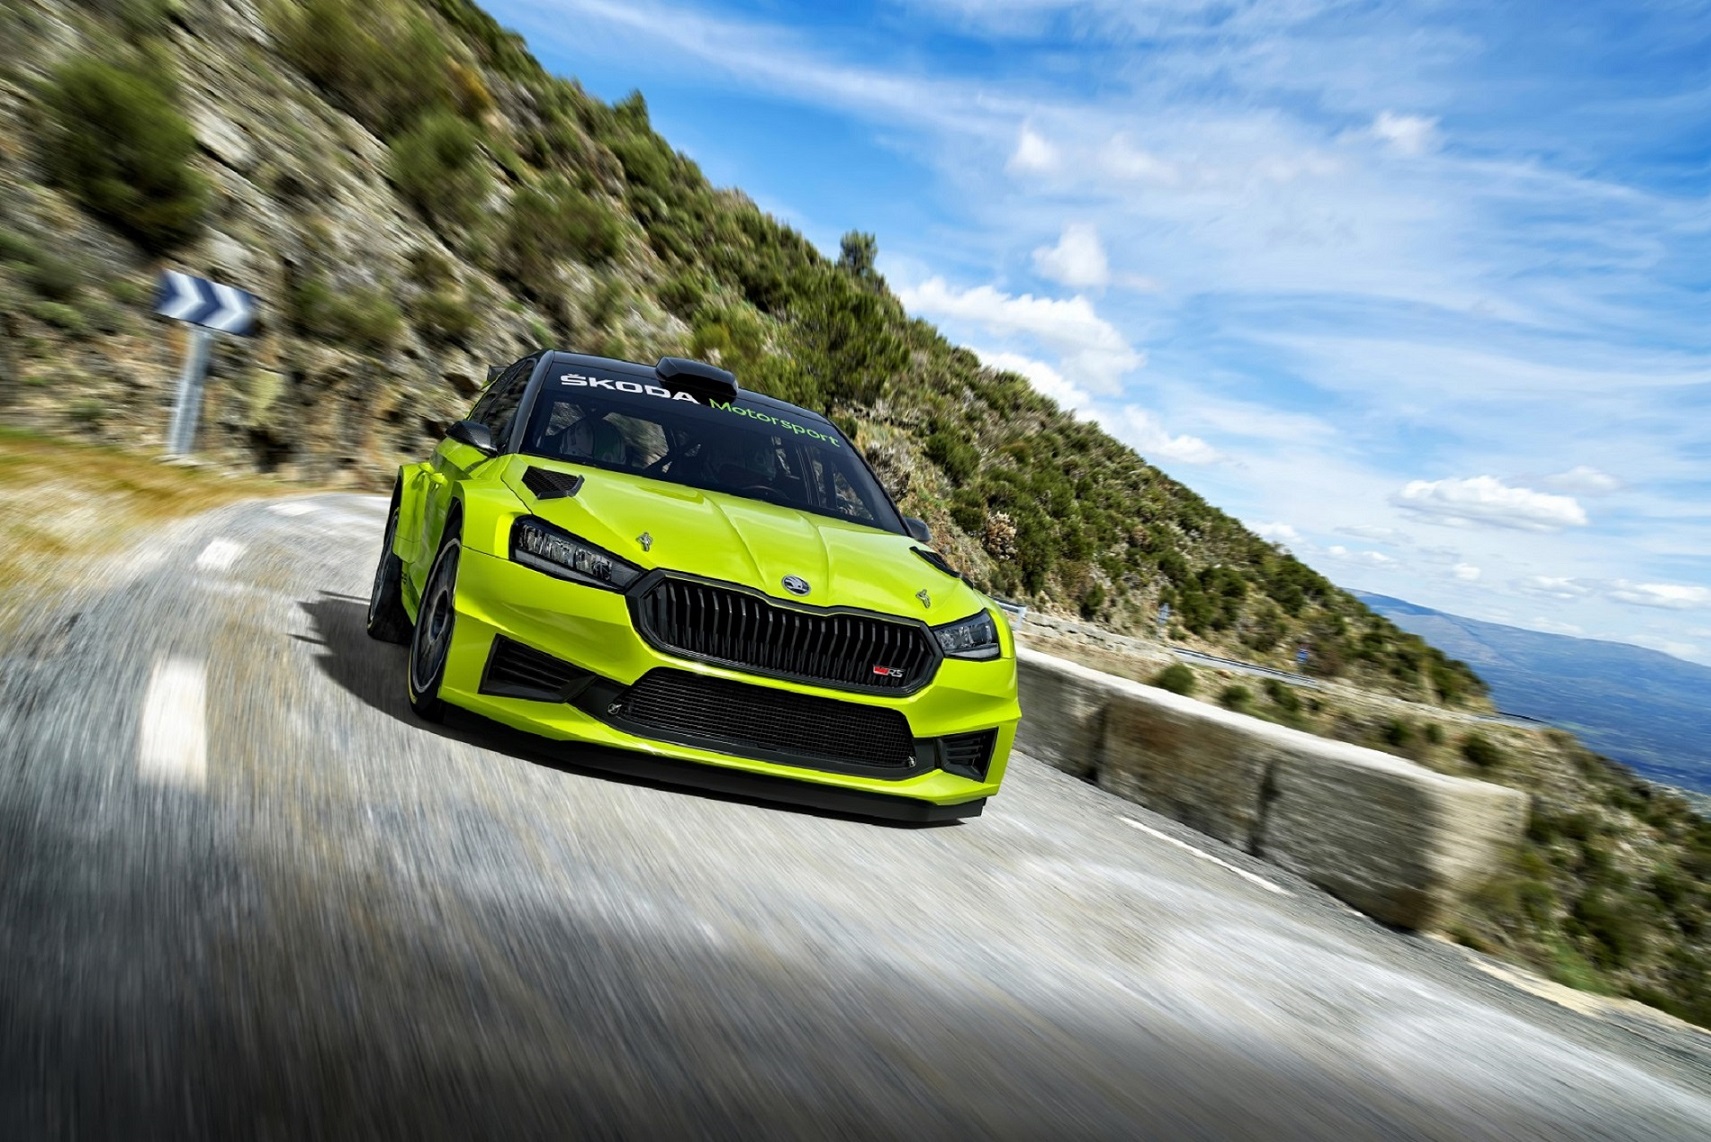 Νέο Skoda Fabia RS Rally2: Ένα αγωνιστικό αυτοκίνητο σχεδιασμένο για νικητές